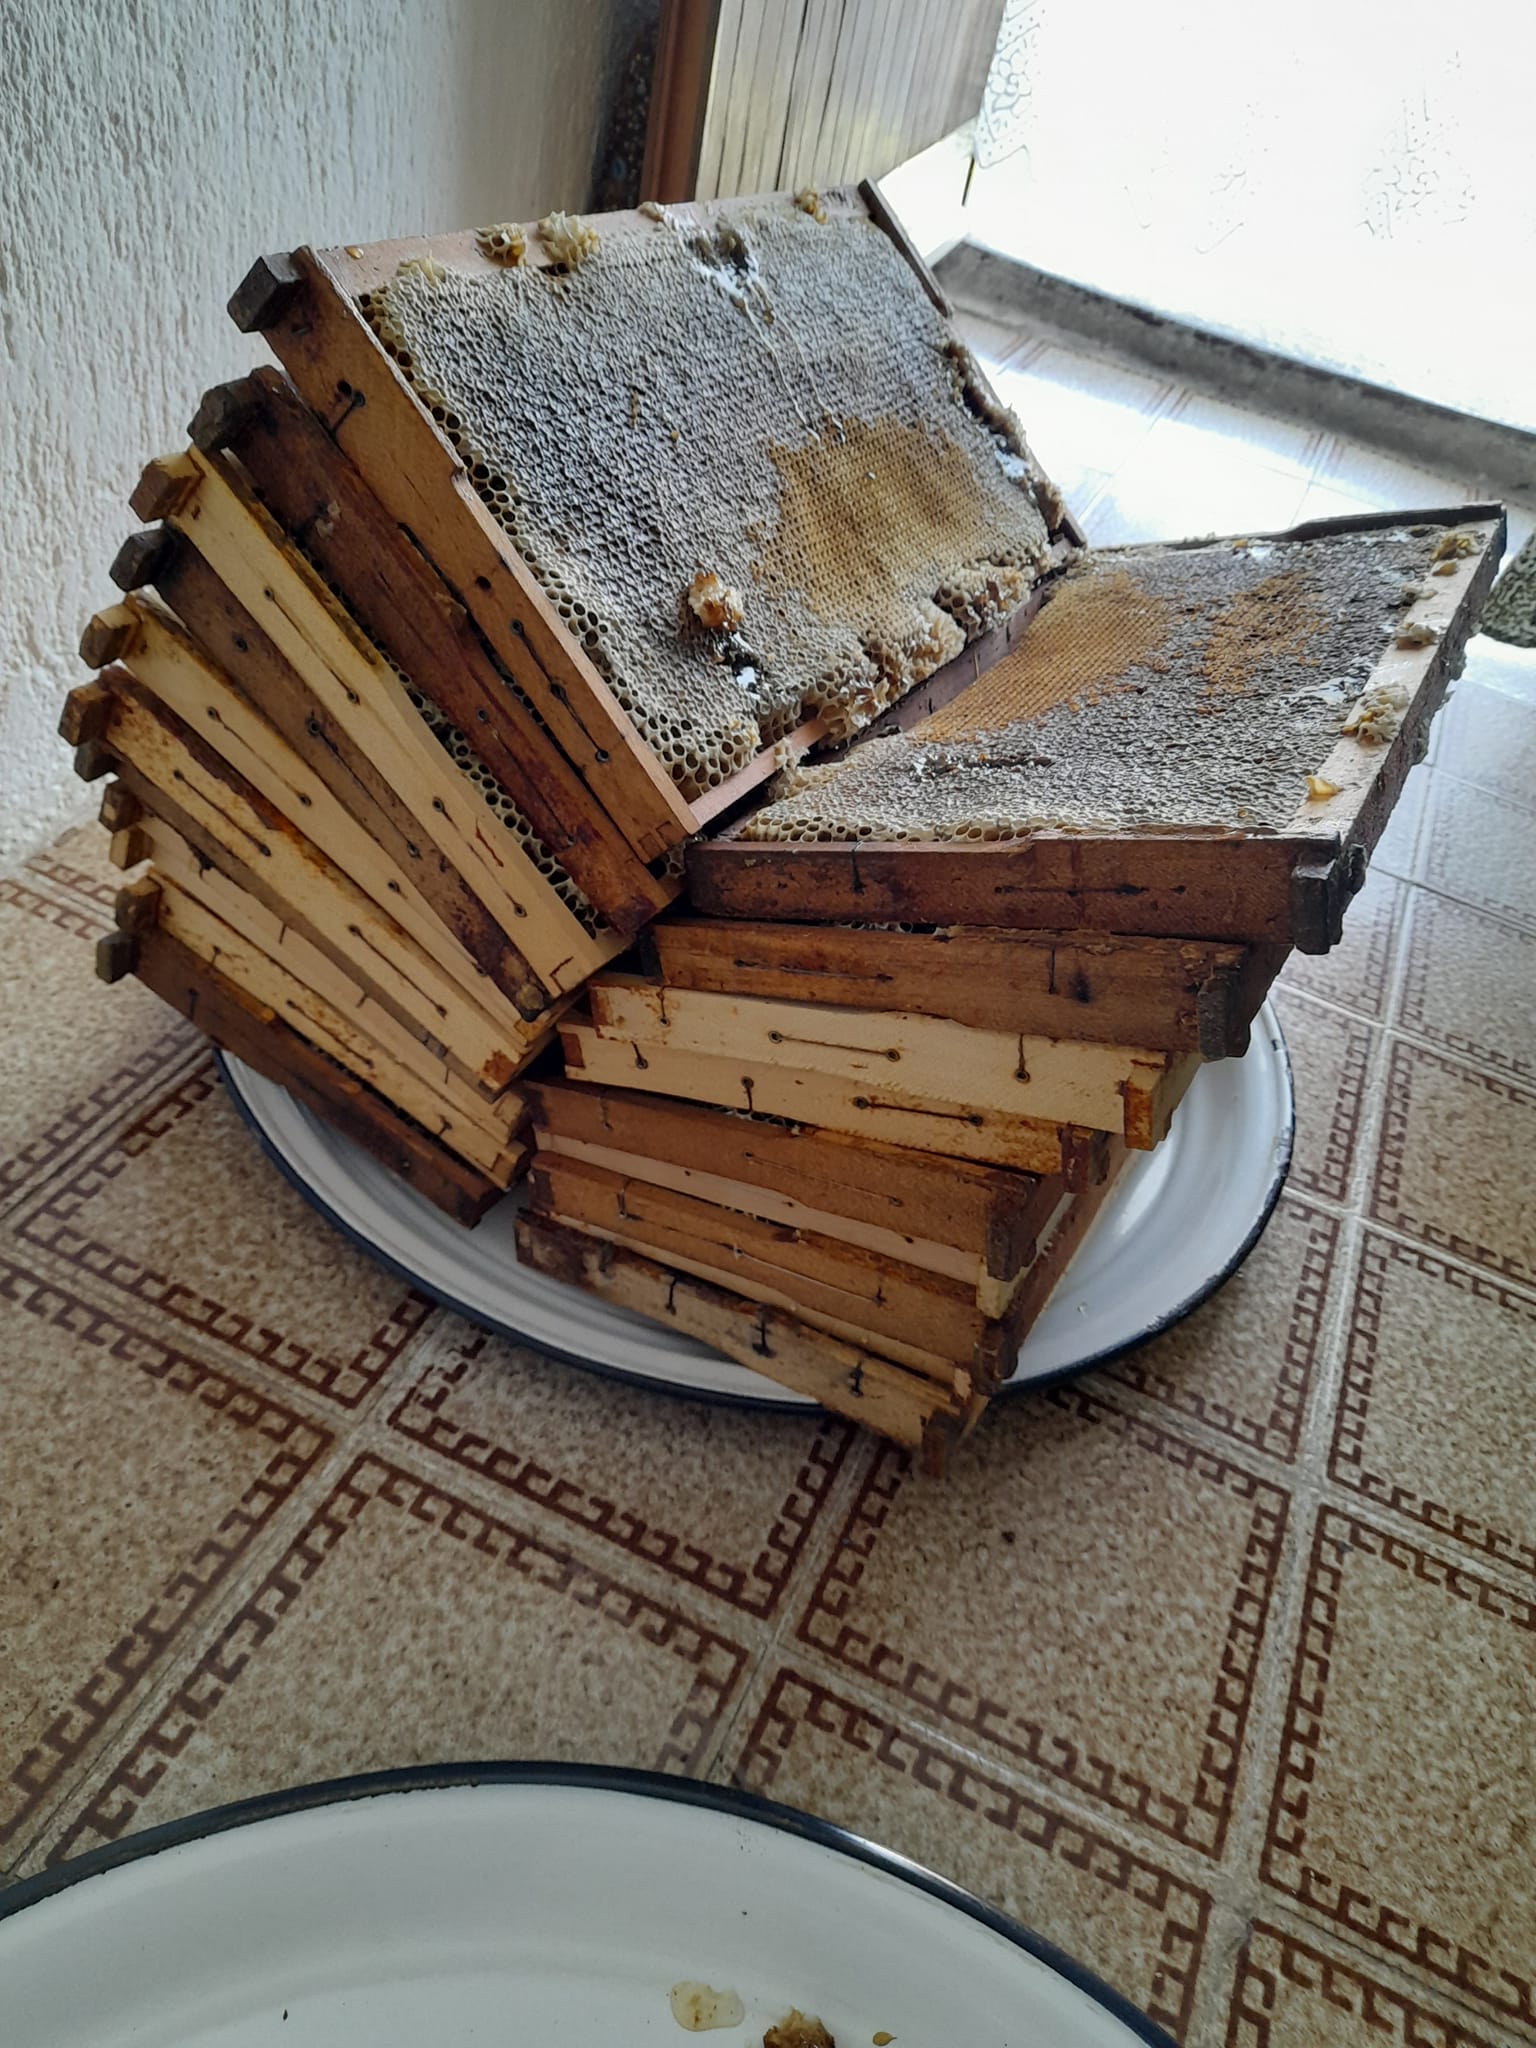 Zvornički pčelari zadovoljni: Prinos bagremovog meda veći od 10 kilograma po košnici (FOTO)